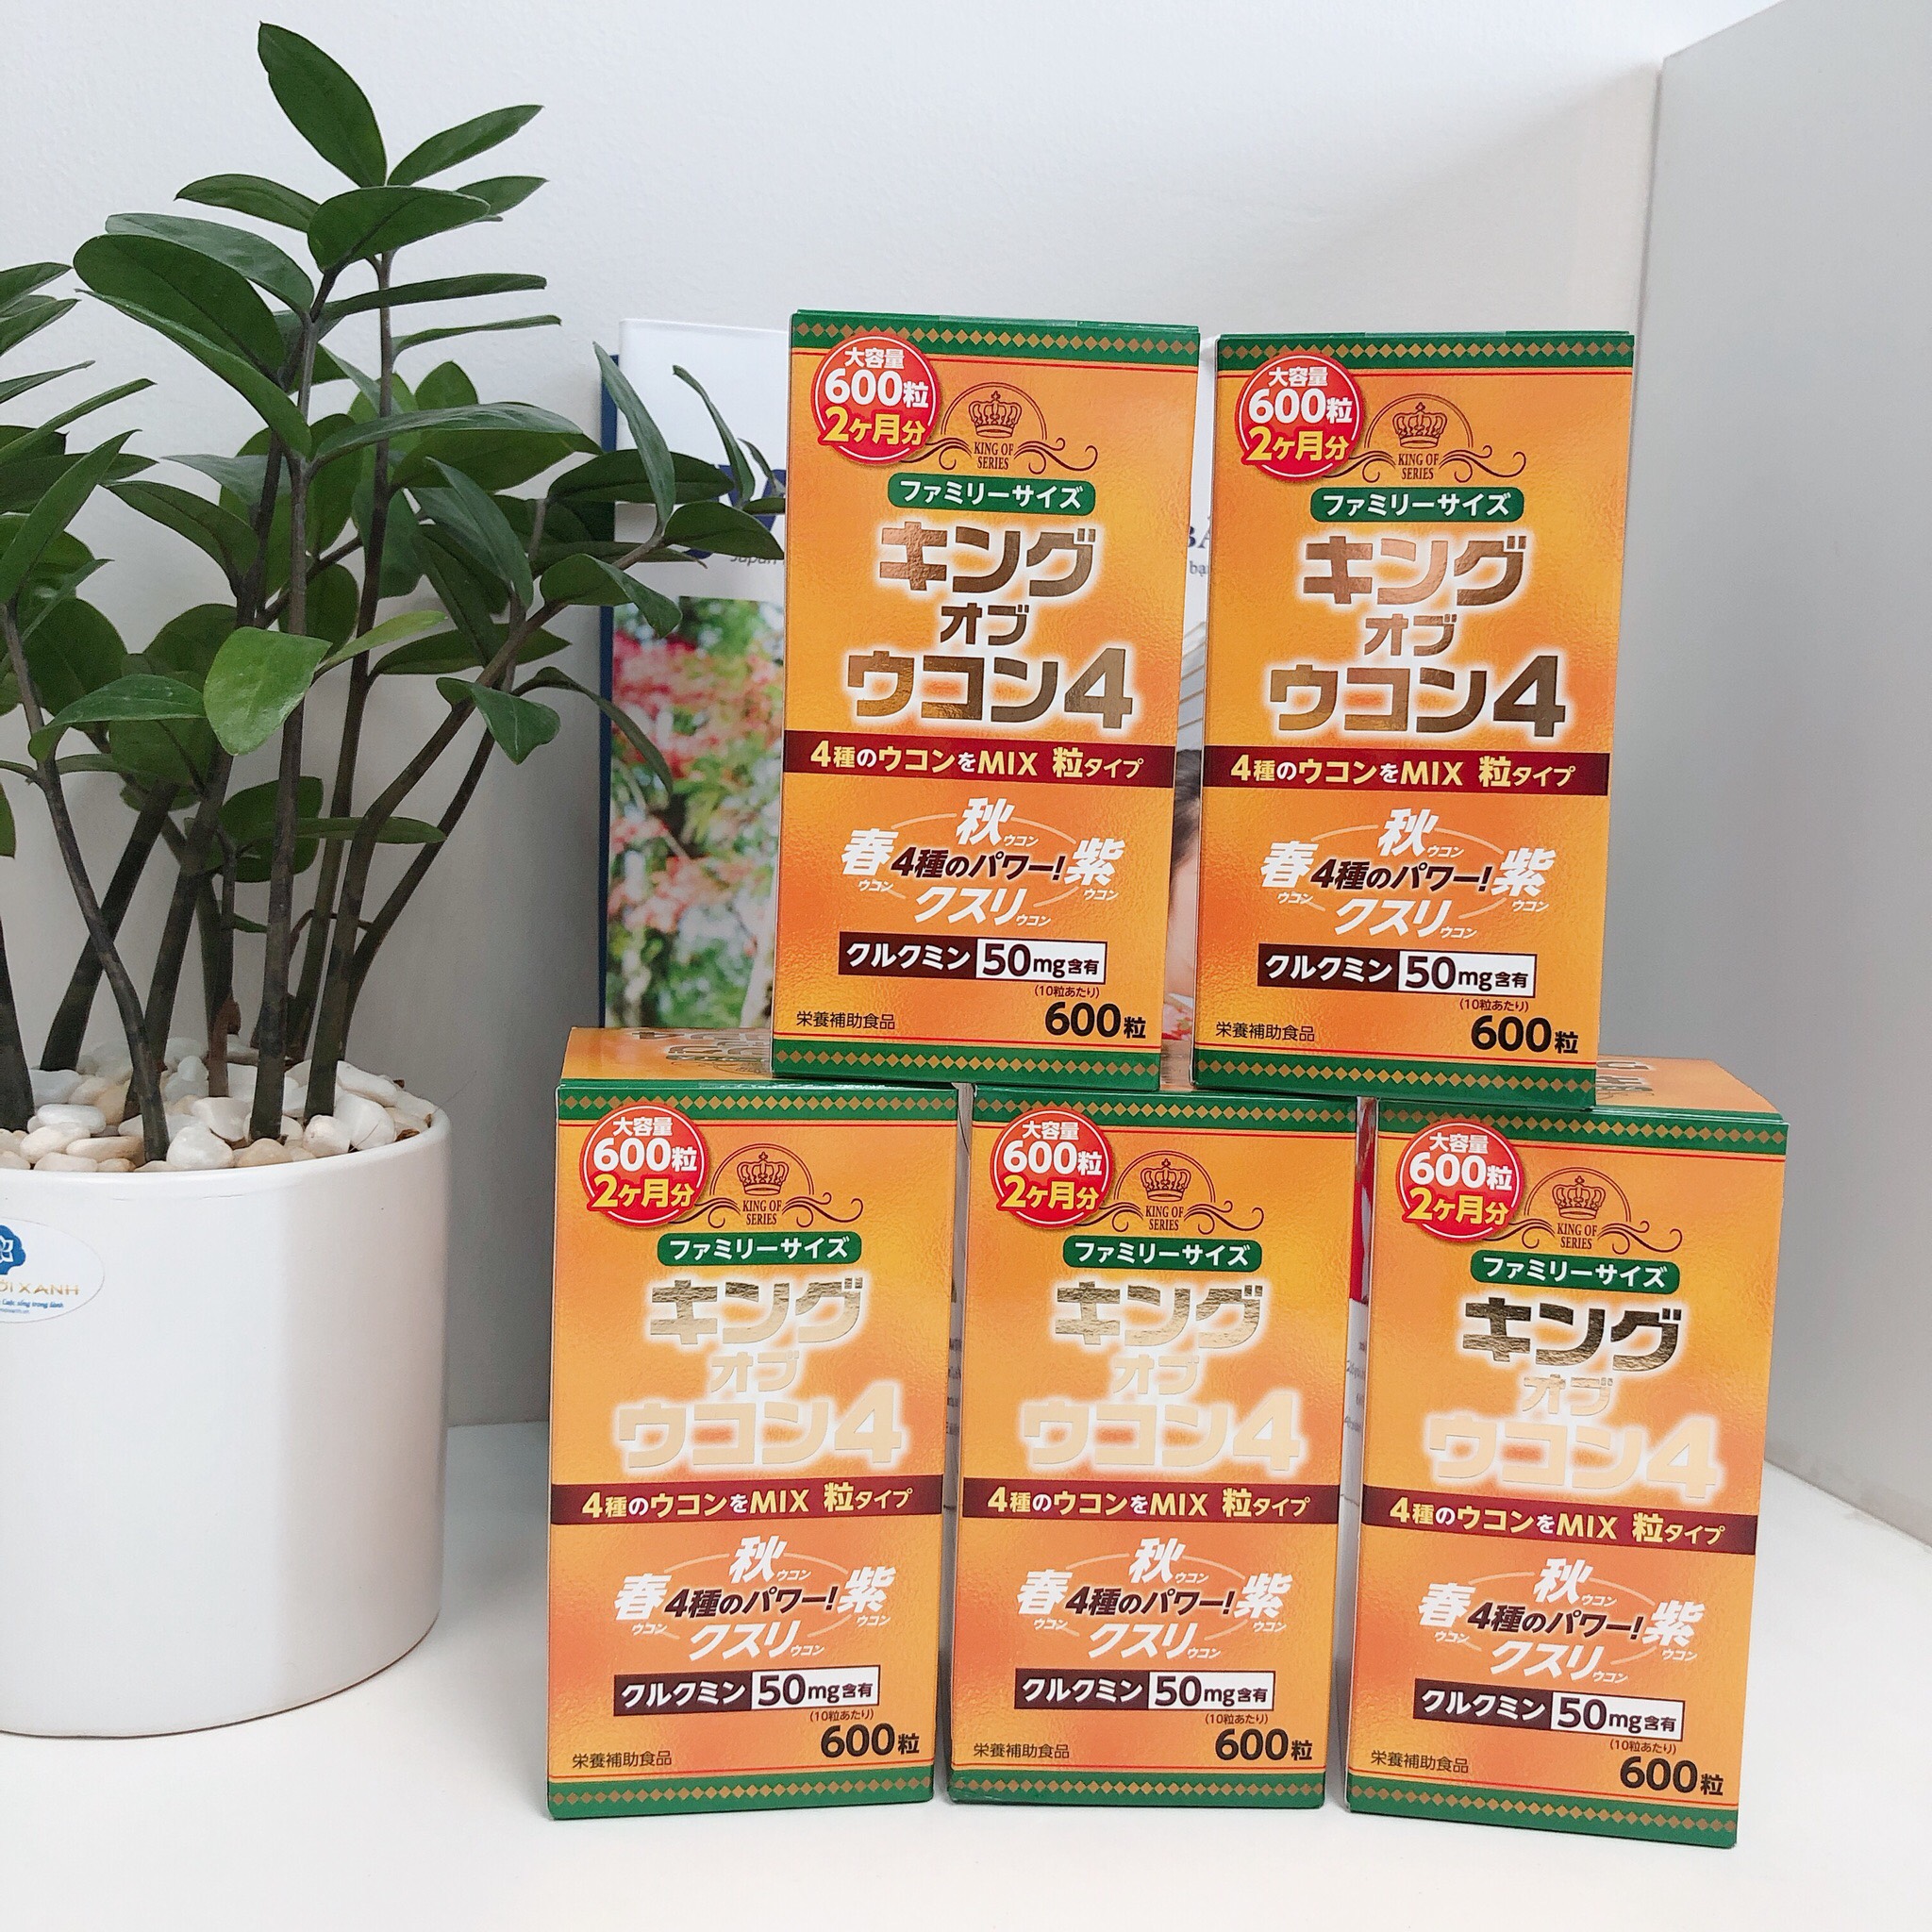 Thực phẩm chức năng nghệ King of Series nhập khẩu từ Nhật Bản 600 viên - hỗ trợ bệnh lý dạ dày tiêu hóa, cải thiện chức năng gan. Tặng khăn mặt bông cao cấp. 4